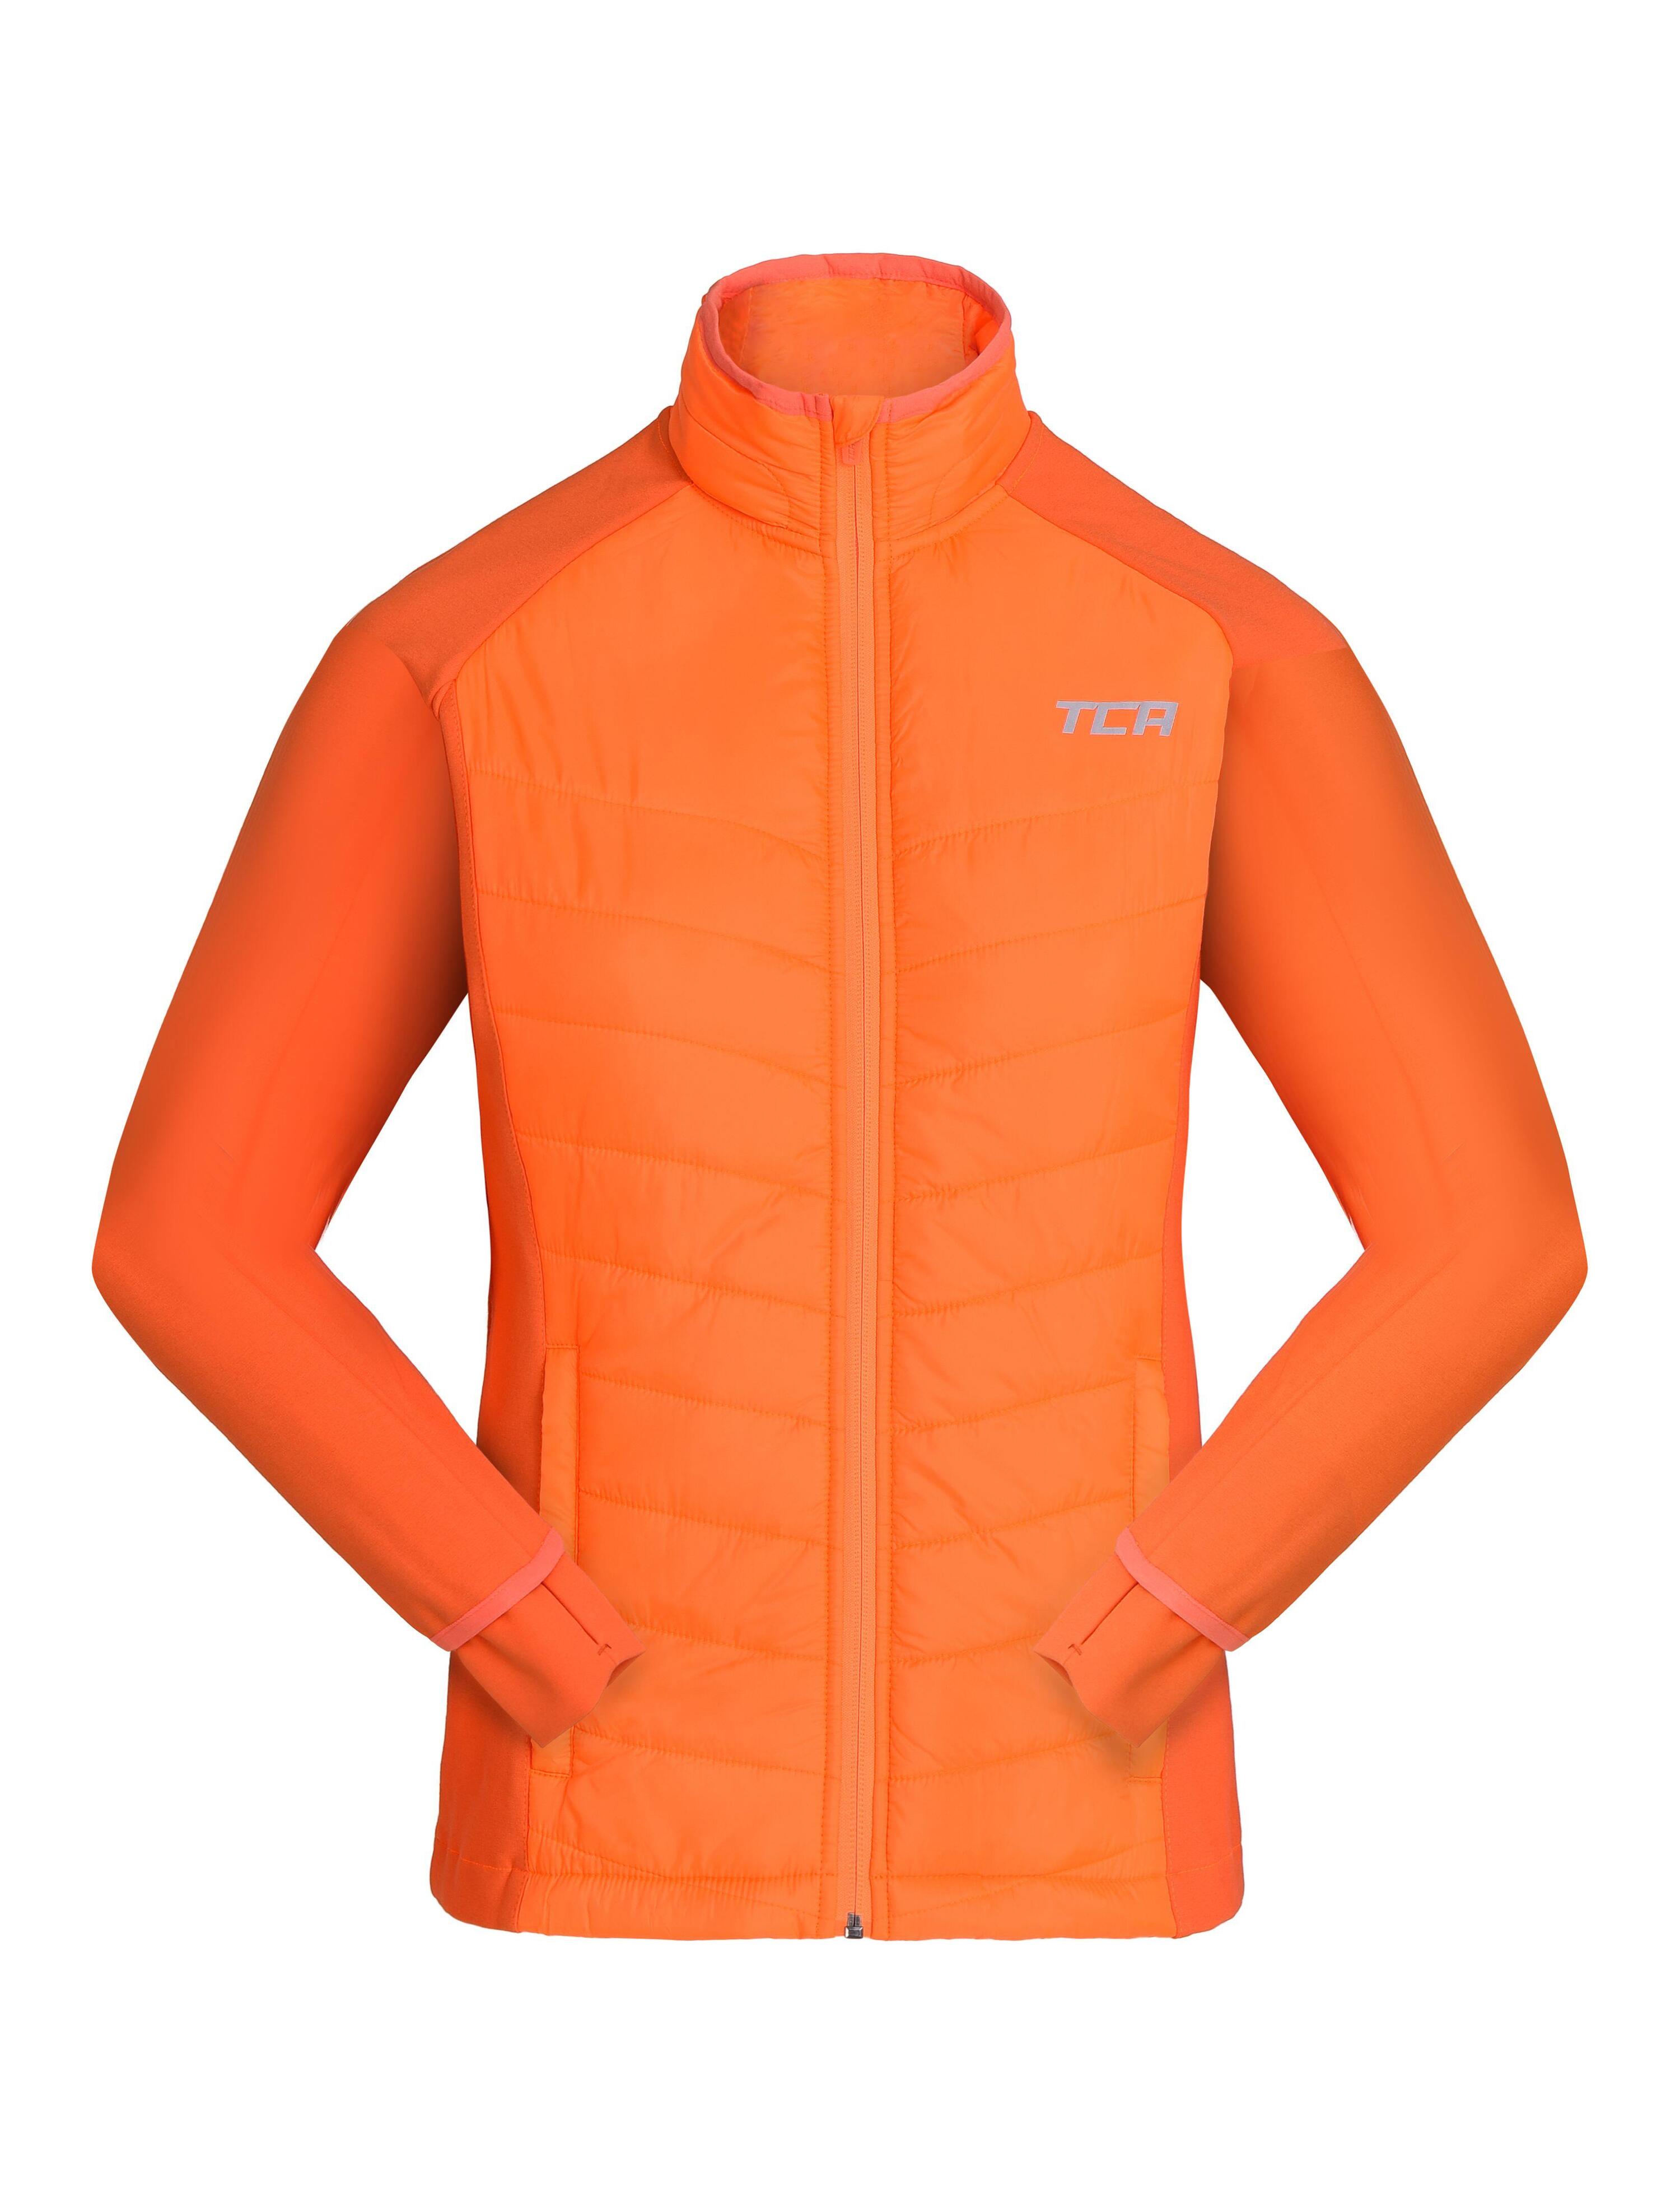 Girls' Excel All-Season Lightweight Jacket - Neon Orange 2/4